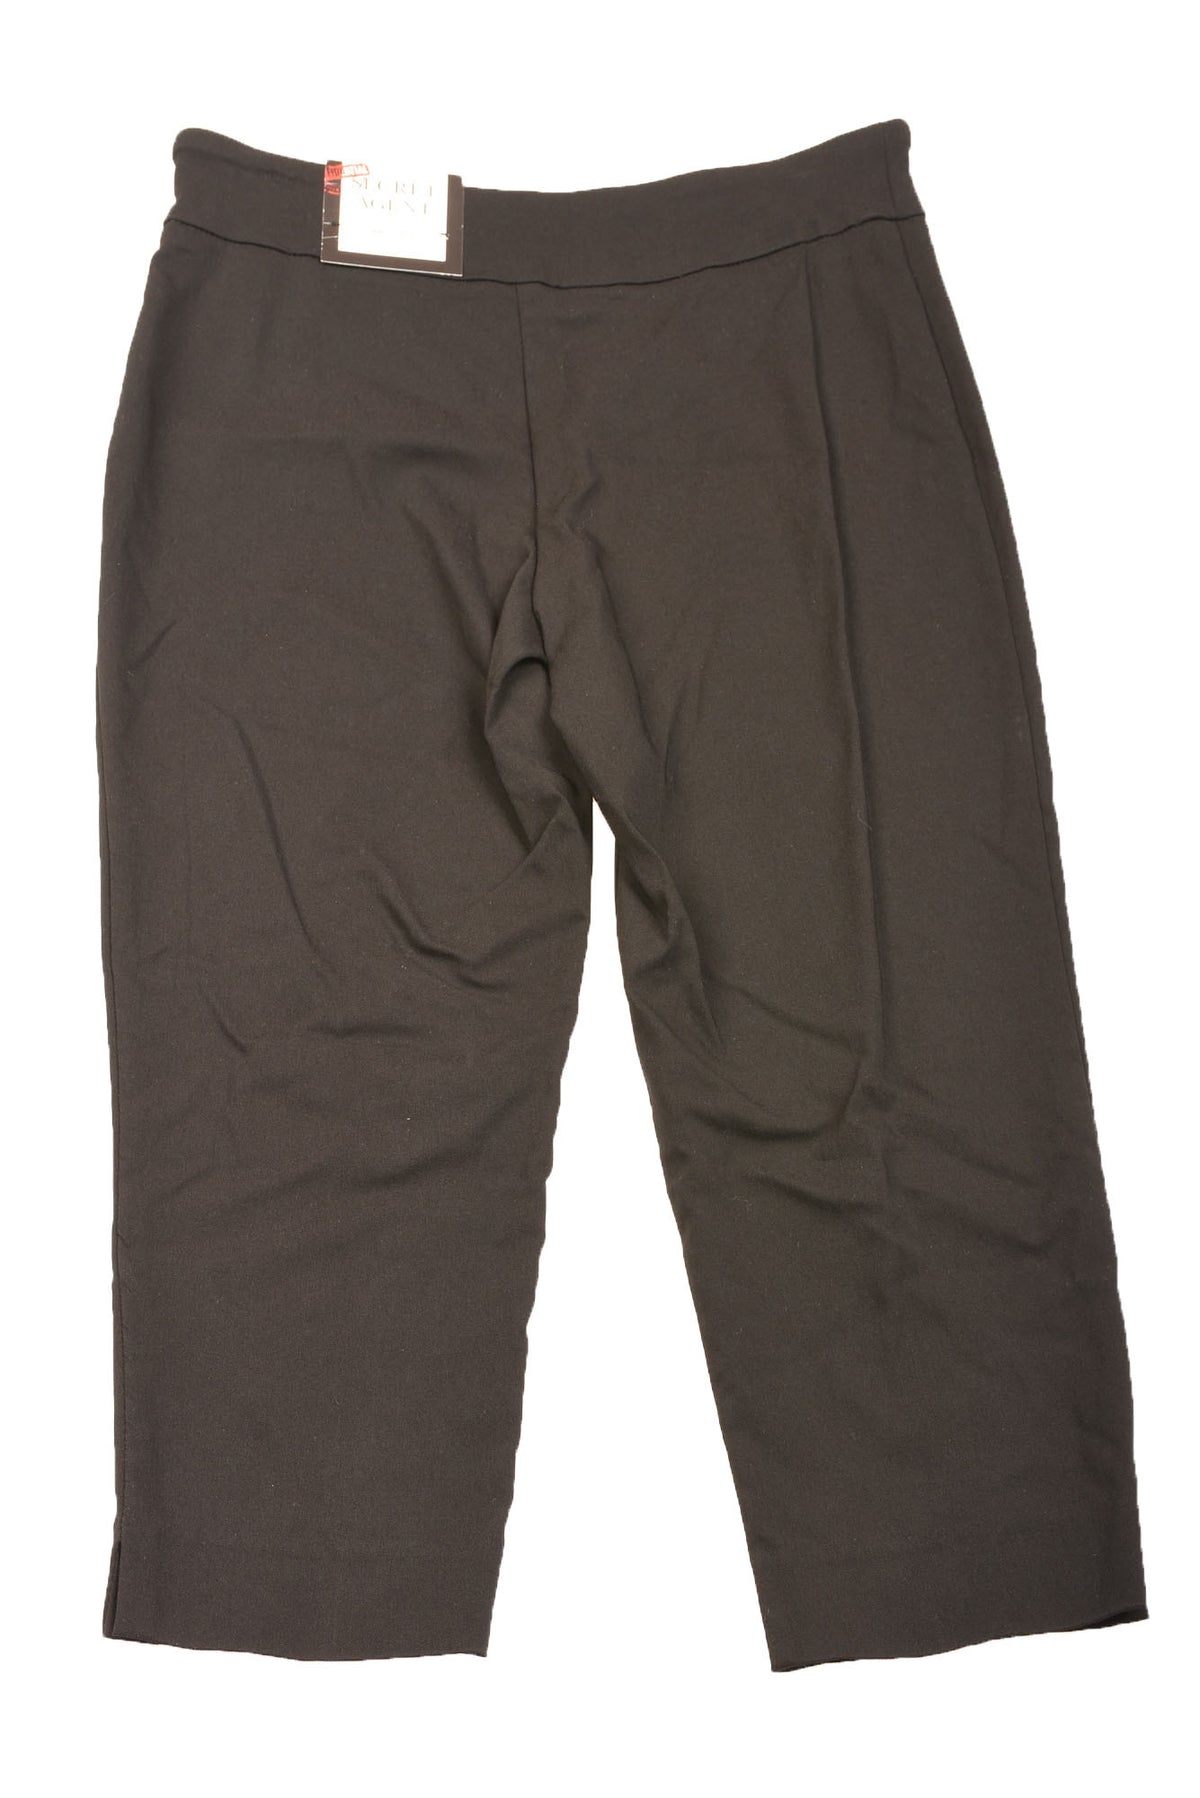 Roz & Ali Rayon Capri Pants for Women